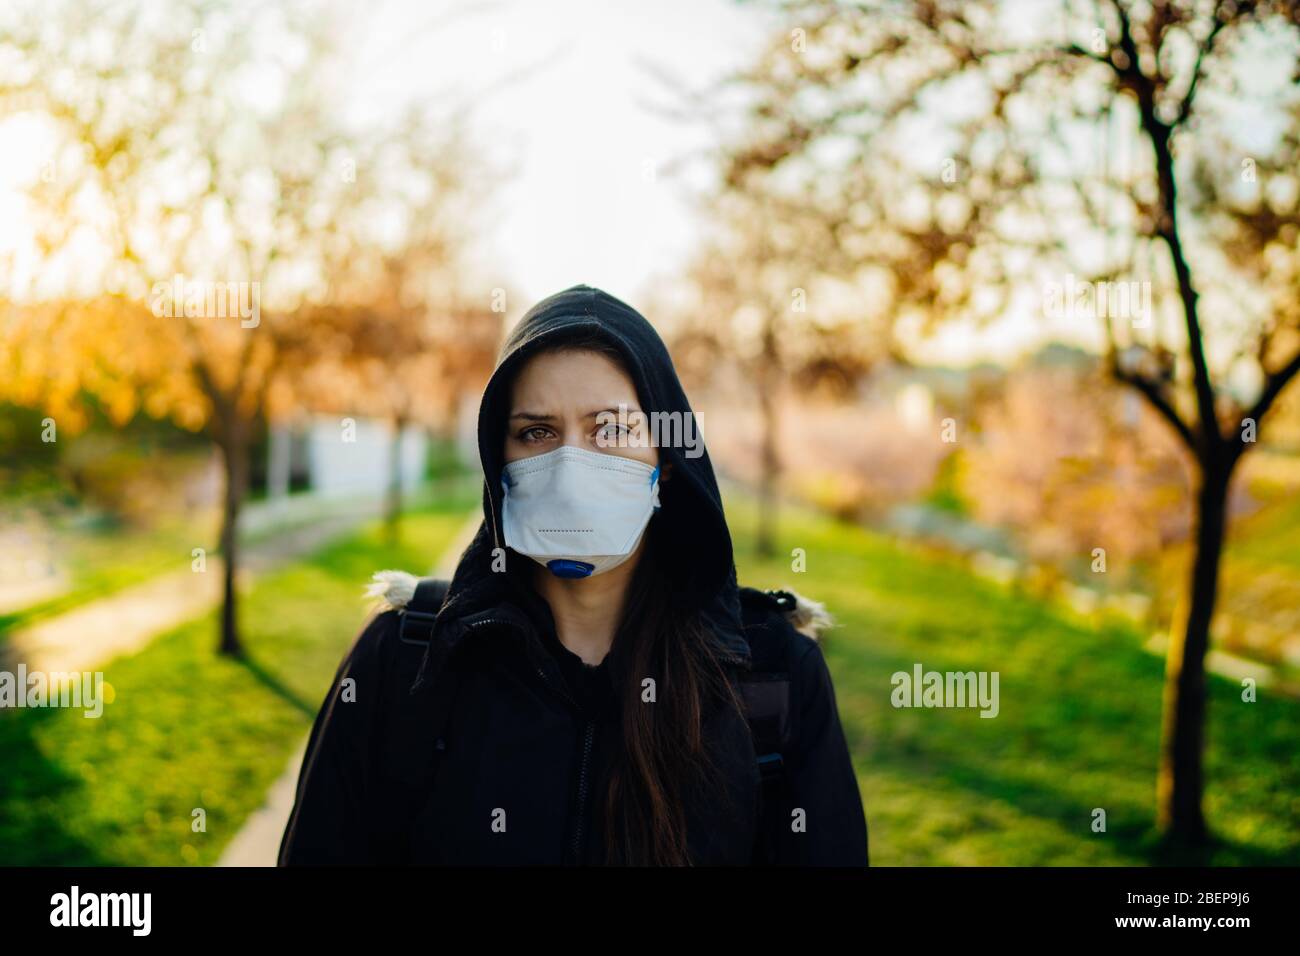 Depresso persona spaventata che indossa una maschera N95 per prevenire la malattia contratta in primavera nature.Coronavirus pandemic life.infection panico e paura.Emotion Foto Stock